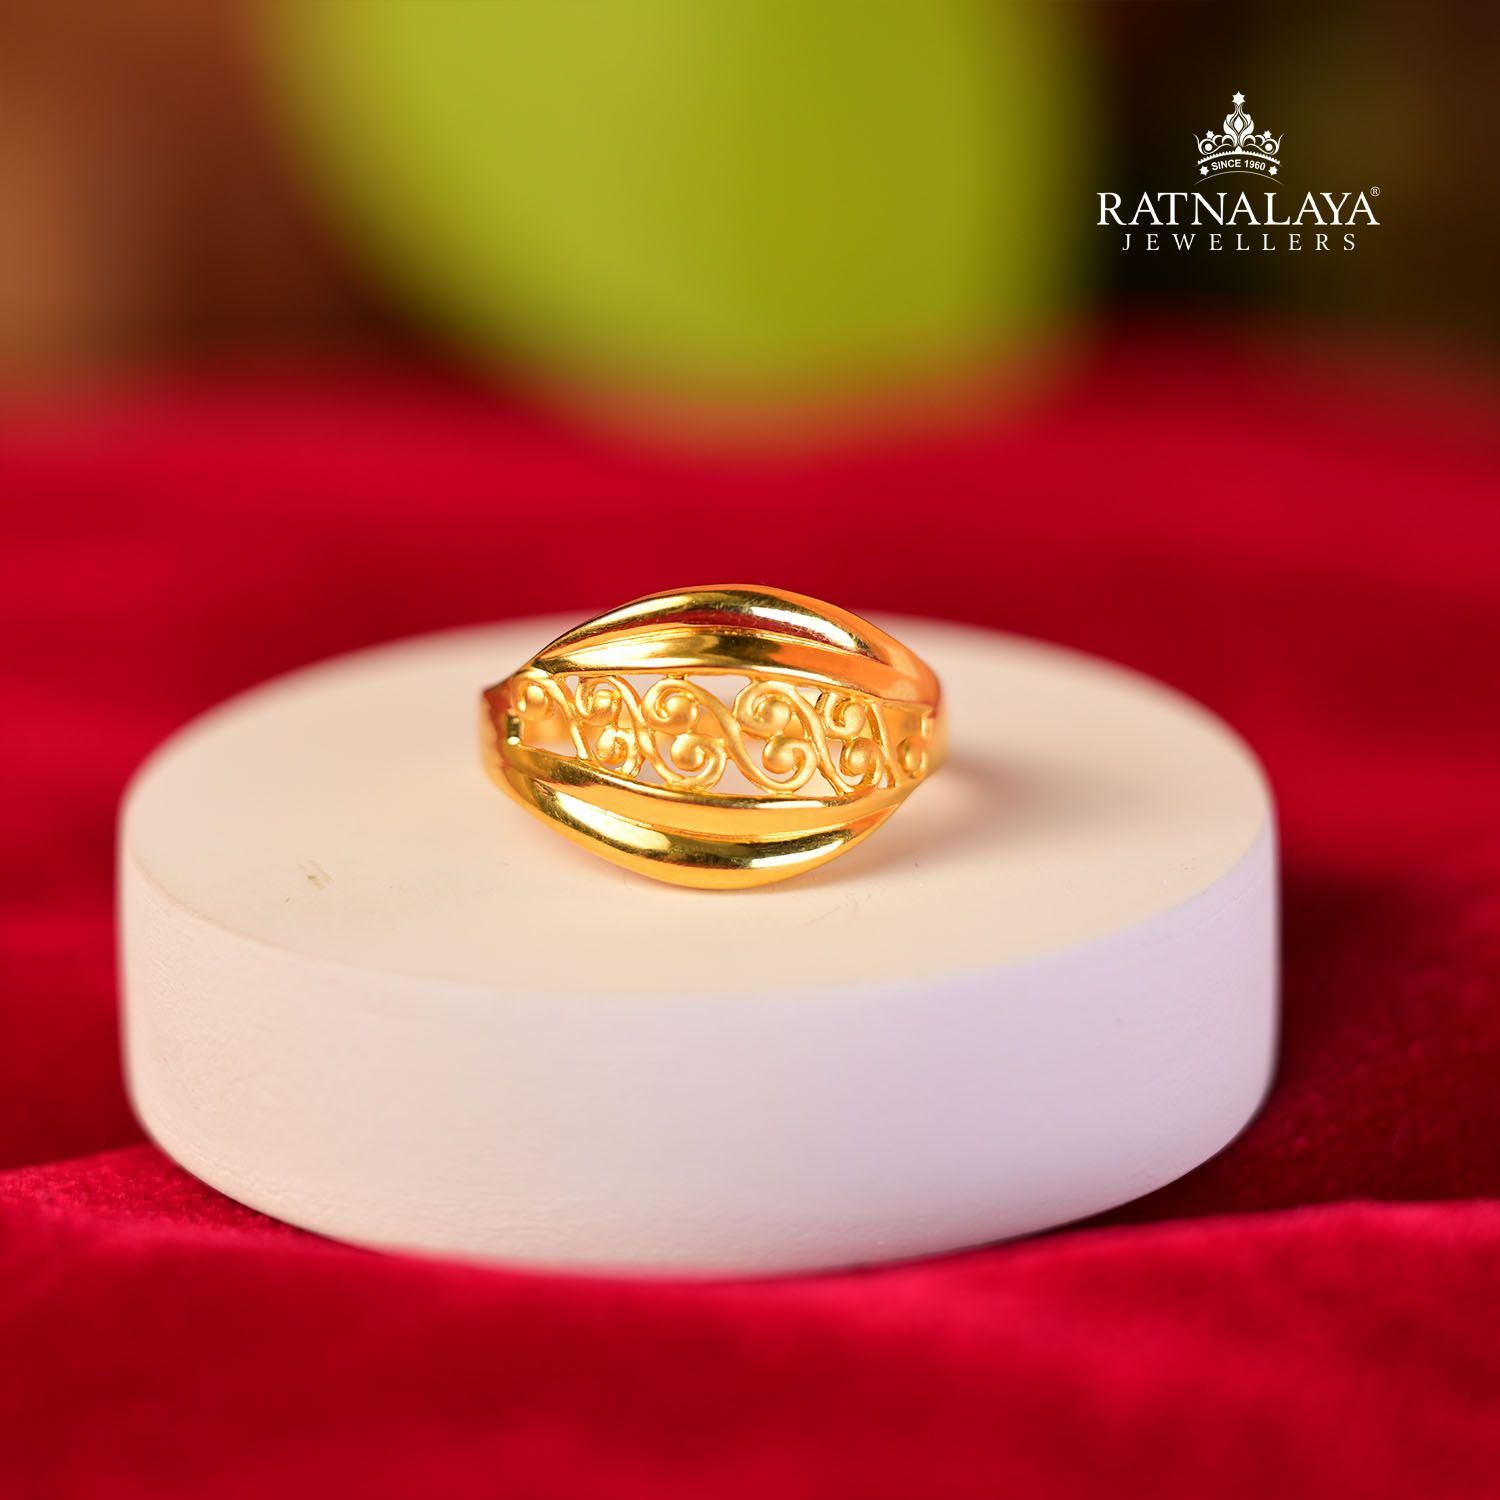 Gold Ring For Women